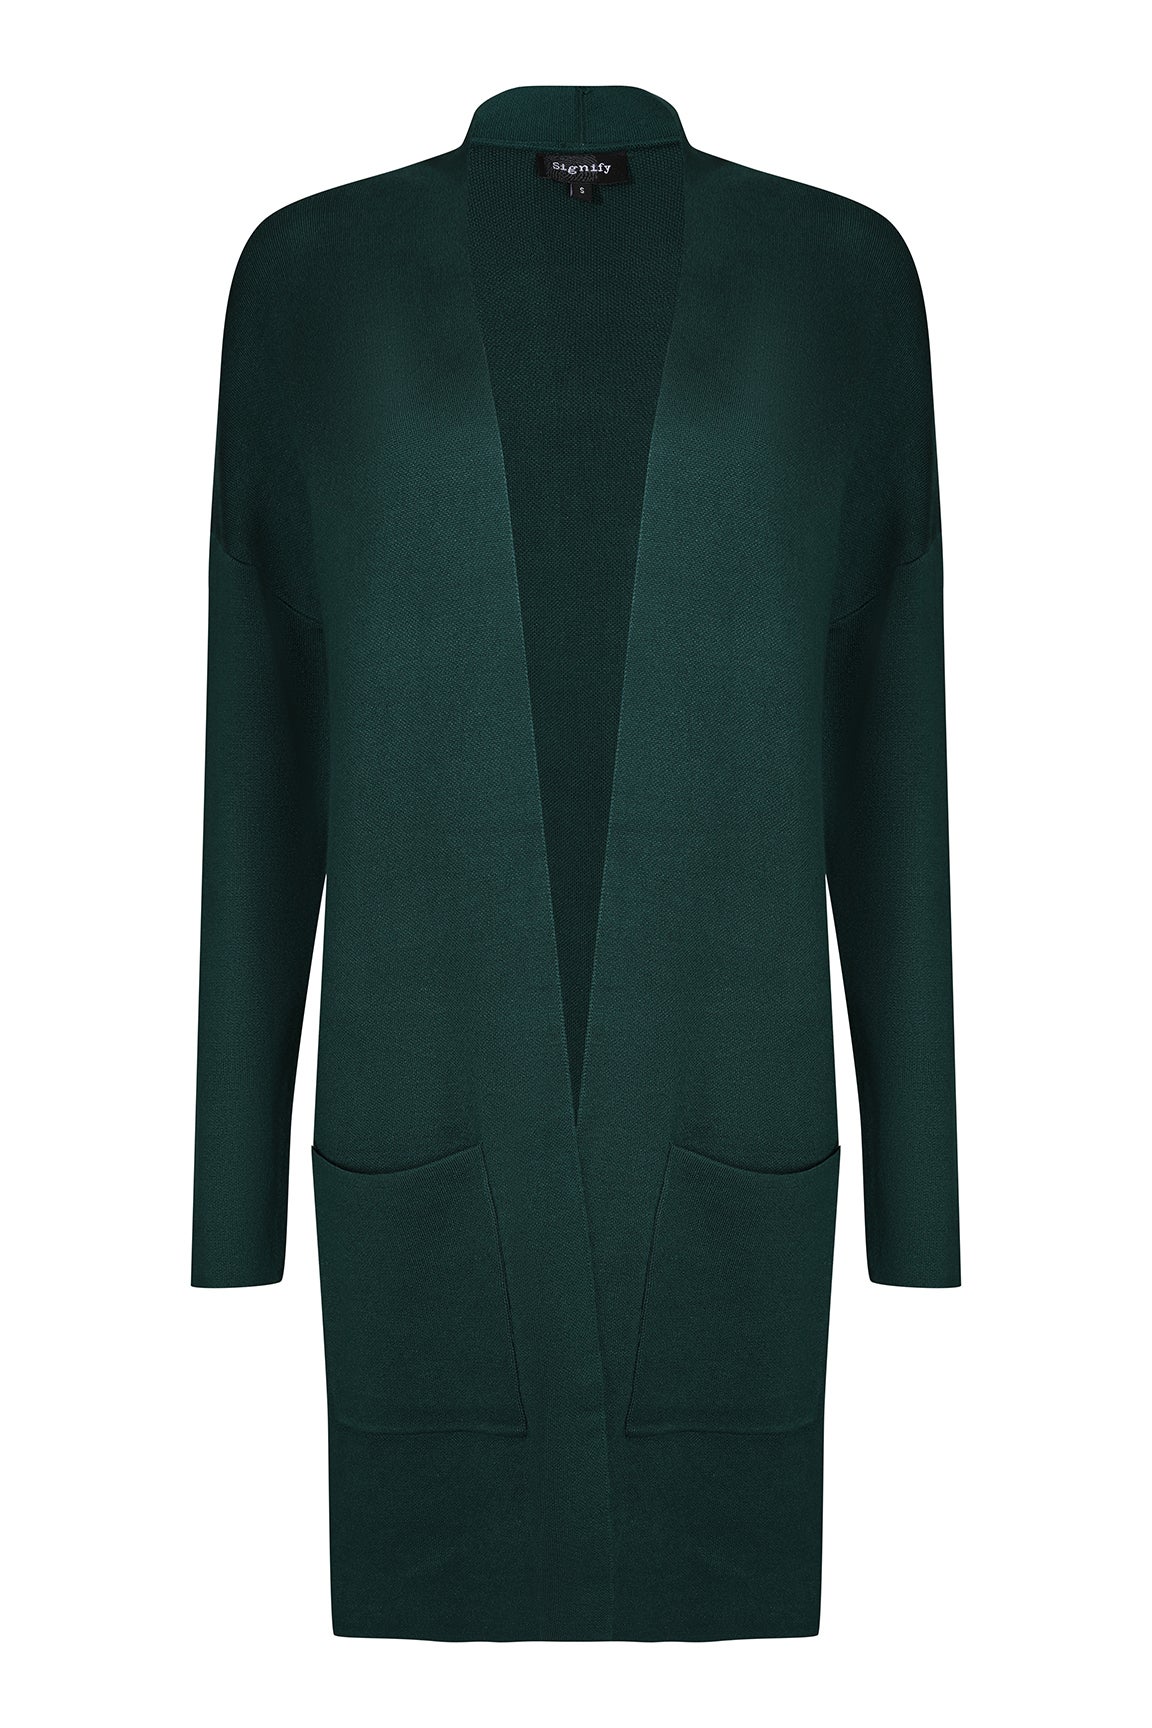 Viscose Rich Knitwear Jacket in Green | Caroline Eve